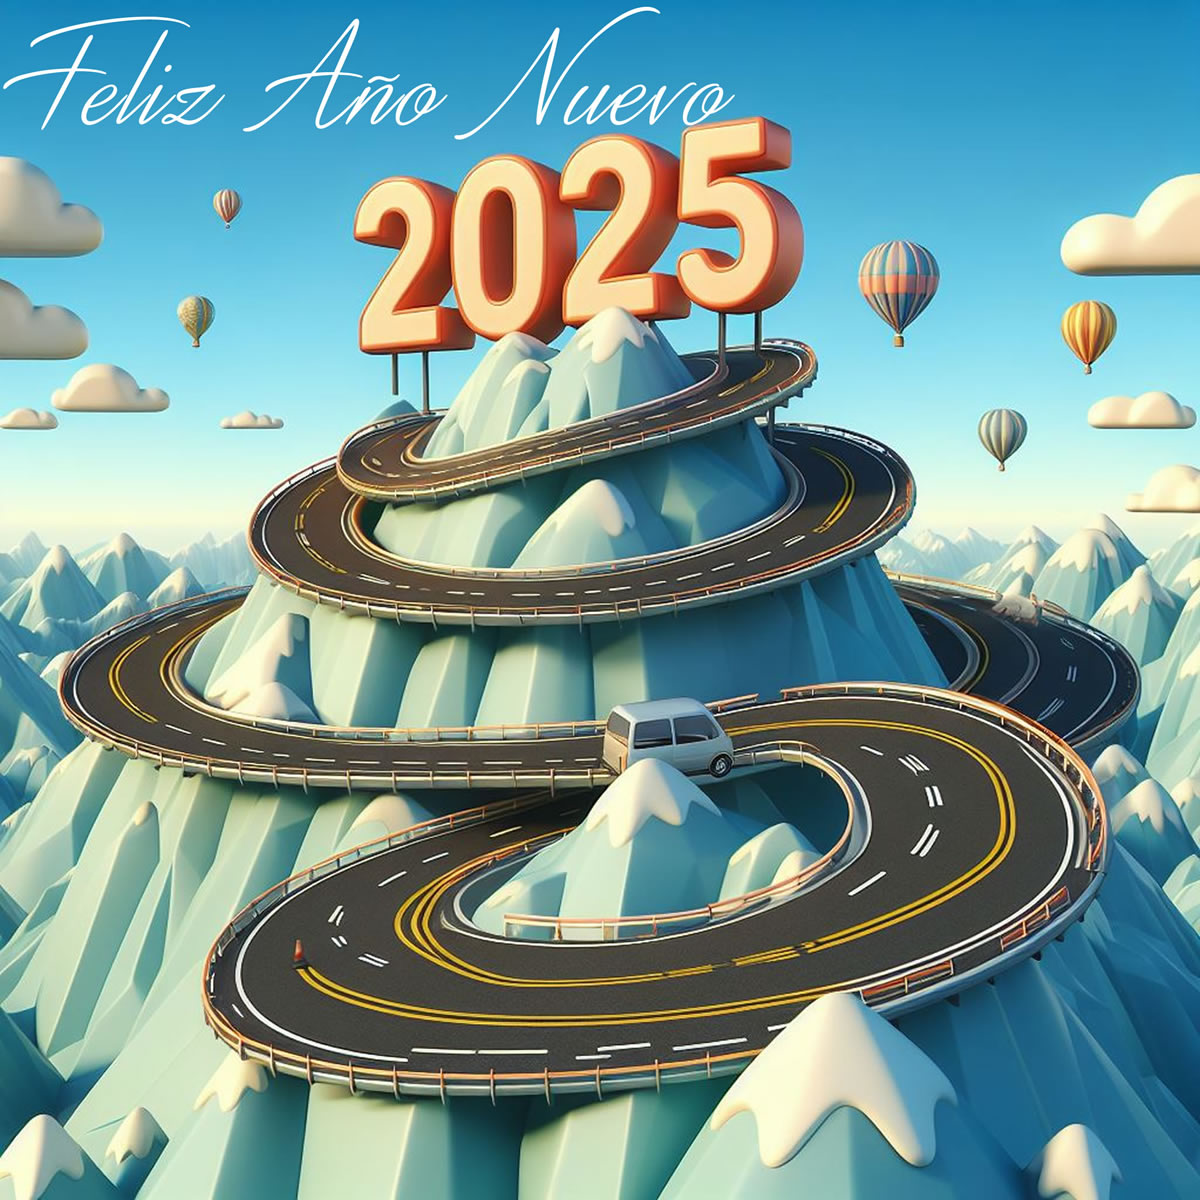 Imagen con carretera para 2025 en pedestal